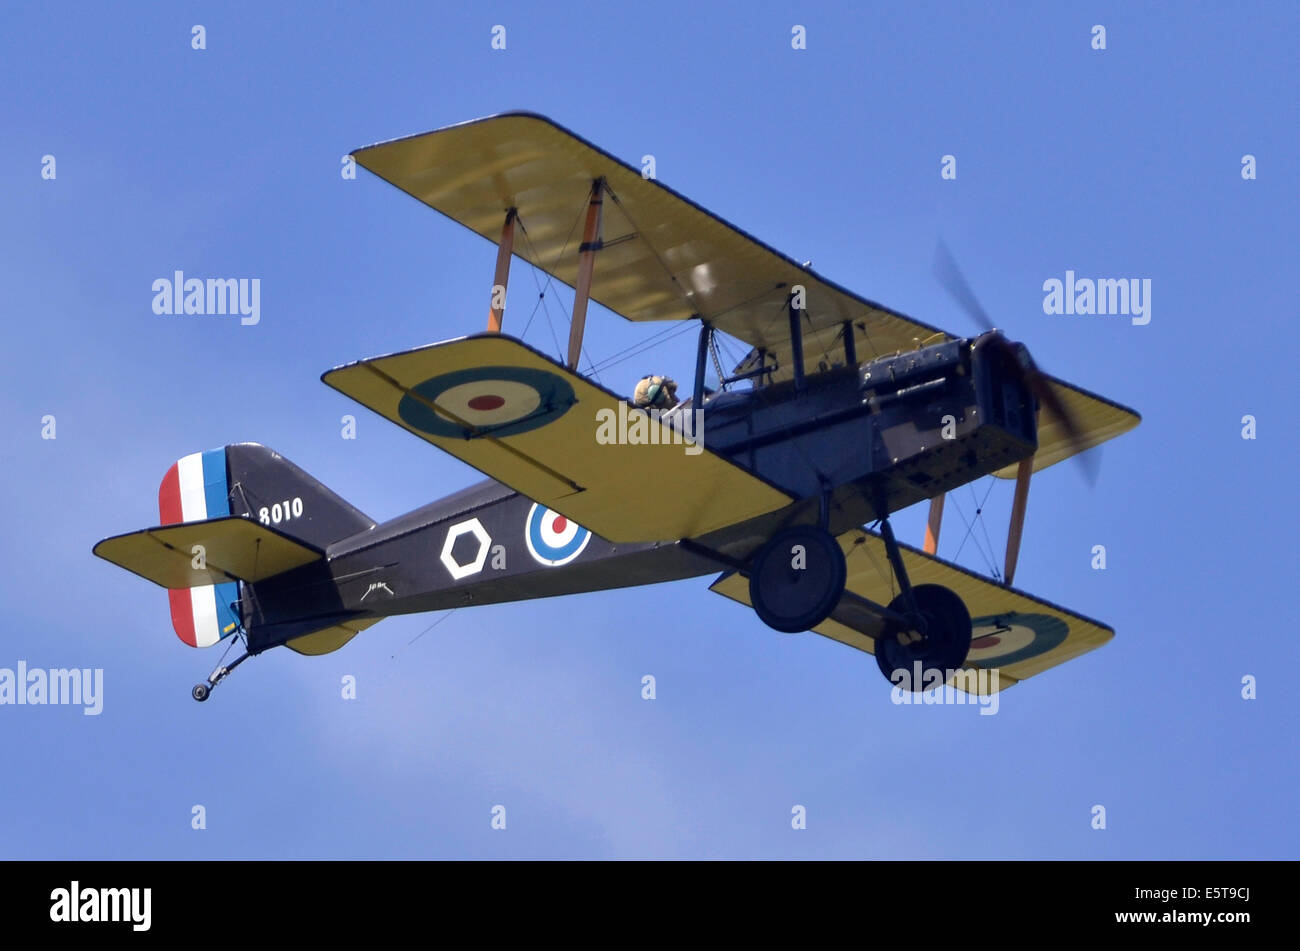 Royal Aircraft Factory SE.5 ein Flugzeug in WW1 Royal Flying Corps Markierungen in Farnborough Airshow 2014 anzeigen Stockfoto